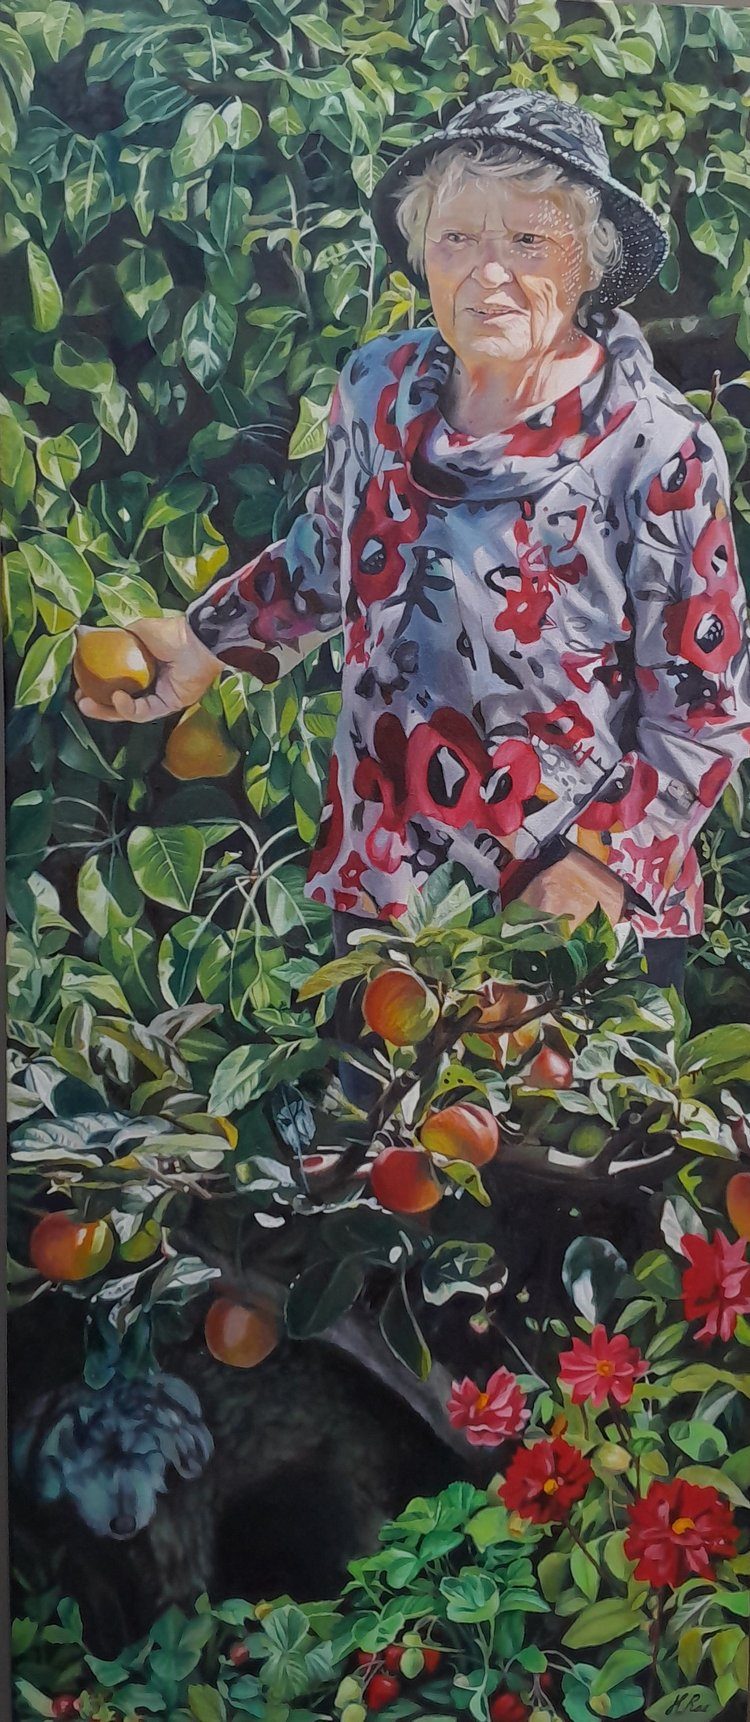 Image of Hazel Rae's portrait titled 'Lindsey's Garden'. 